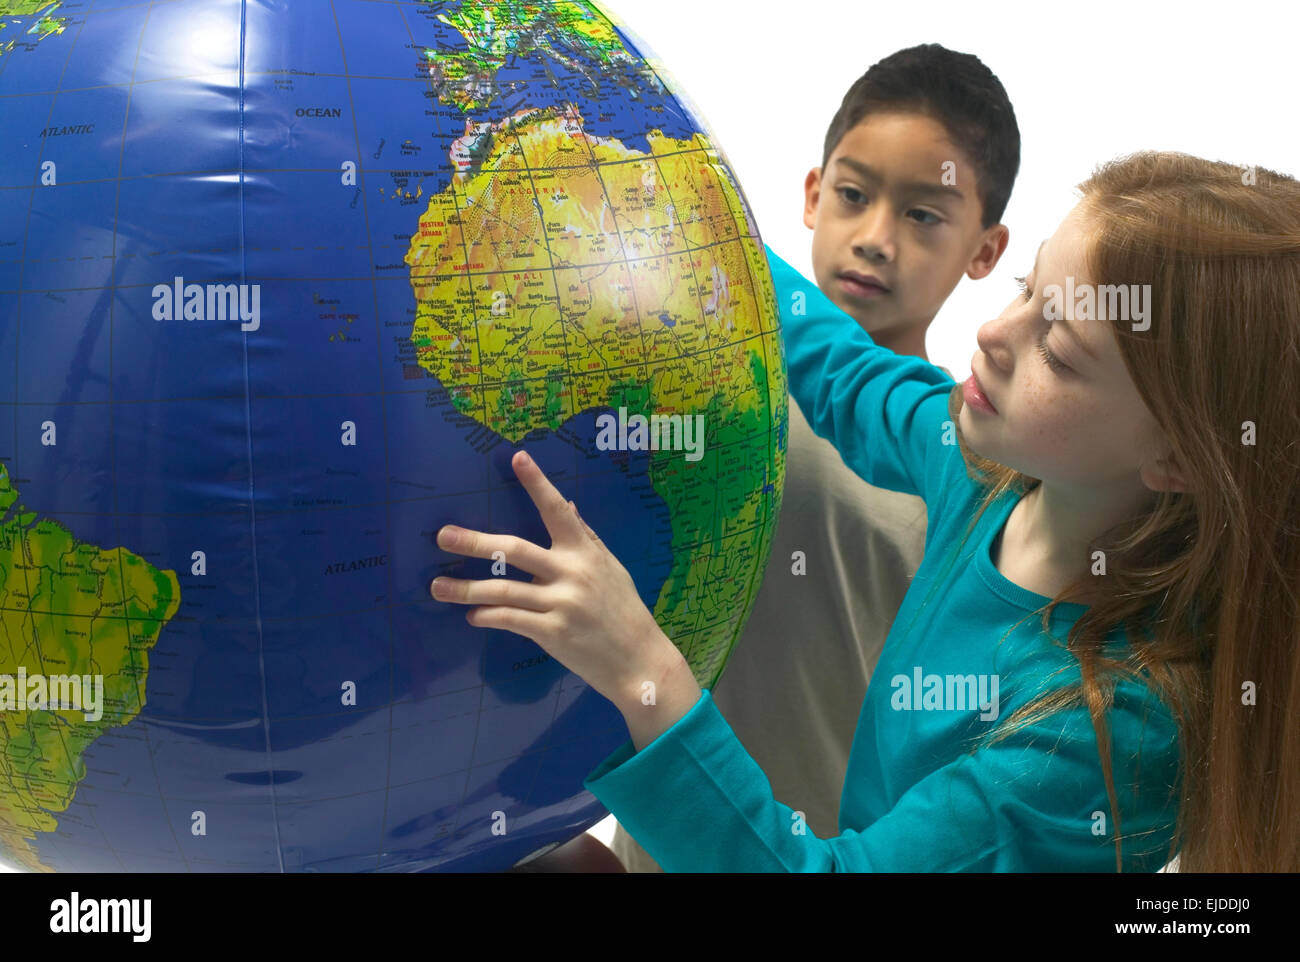 Porträt eines kaukasischen Mädchens und ein Hispanic junge Afrika auf ein  aufblasbarer Wasserball Globus auf einem weißen Hintergrund suchen. T  Stockfotografie - Alamy